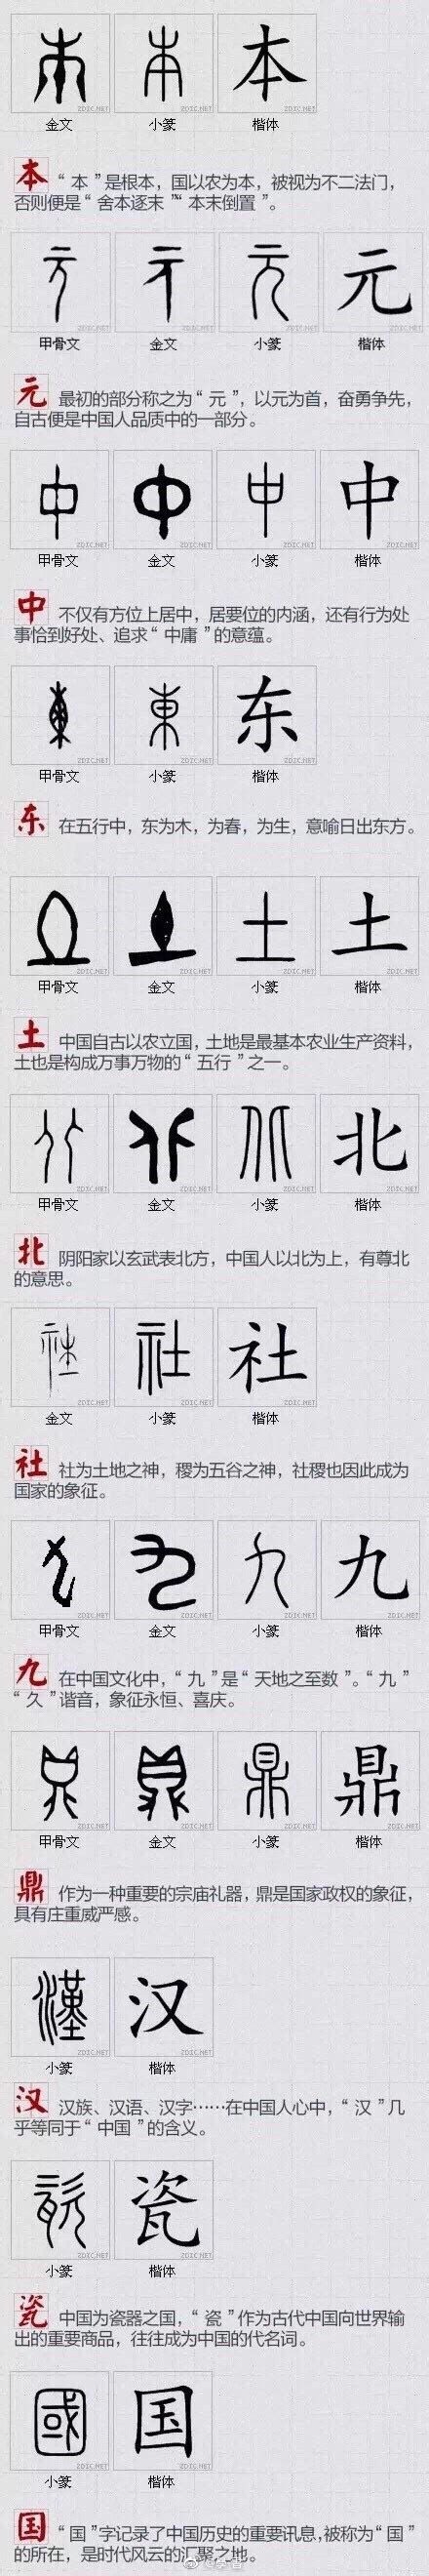 最能代表 中国文化的 100个汉字。